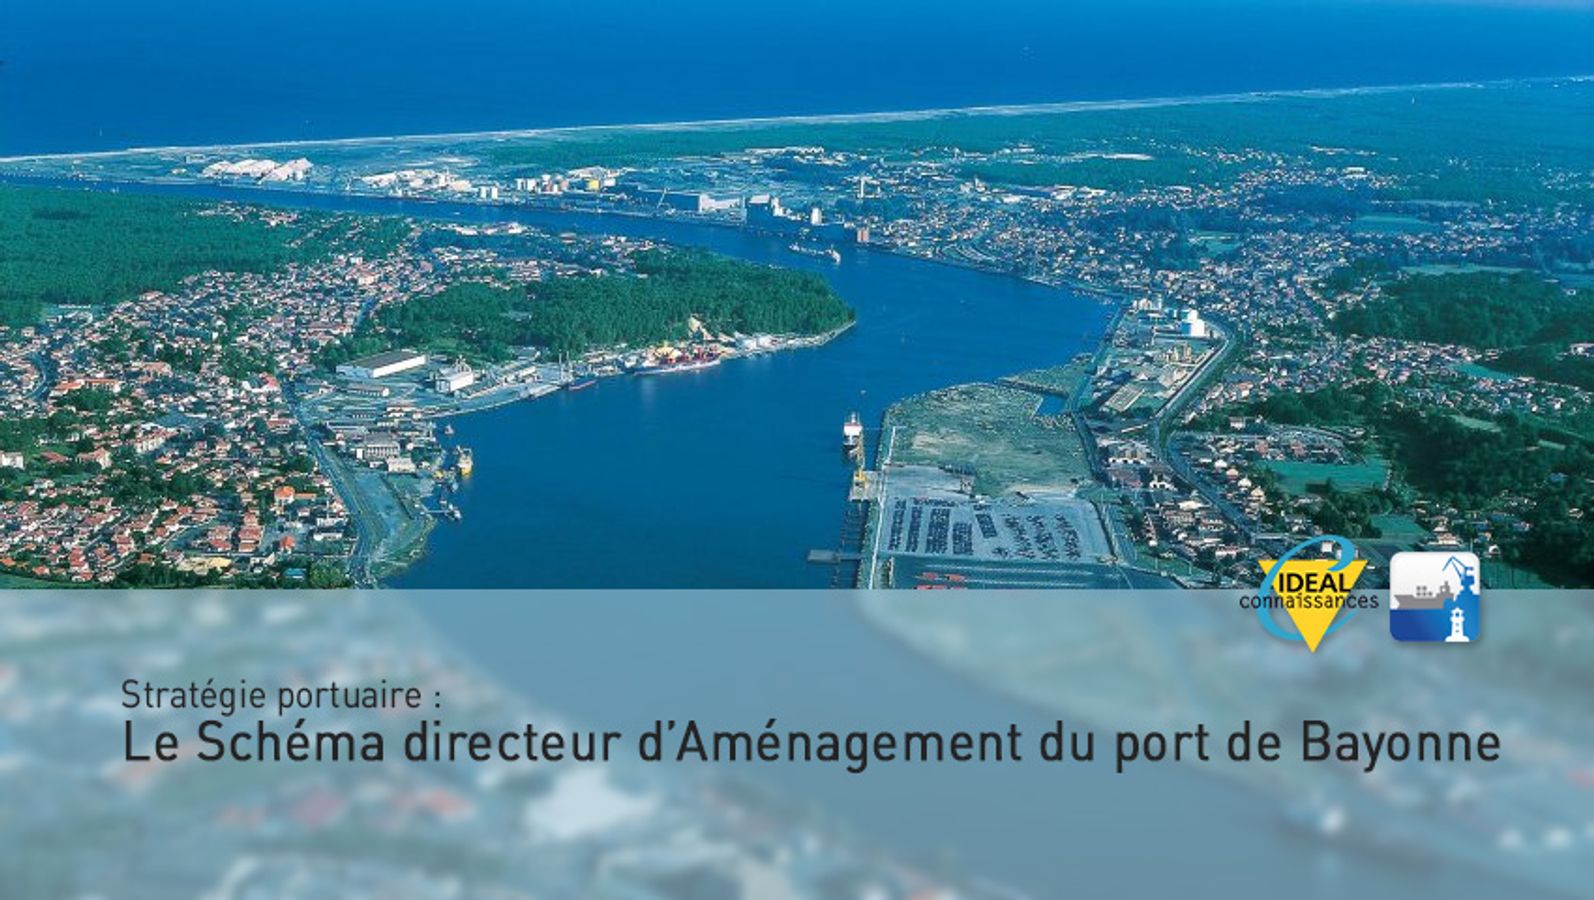 Stratégie  portuaire : Le Schéma directeur d’Aménagement du port de Bayonne